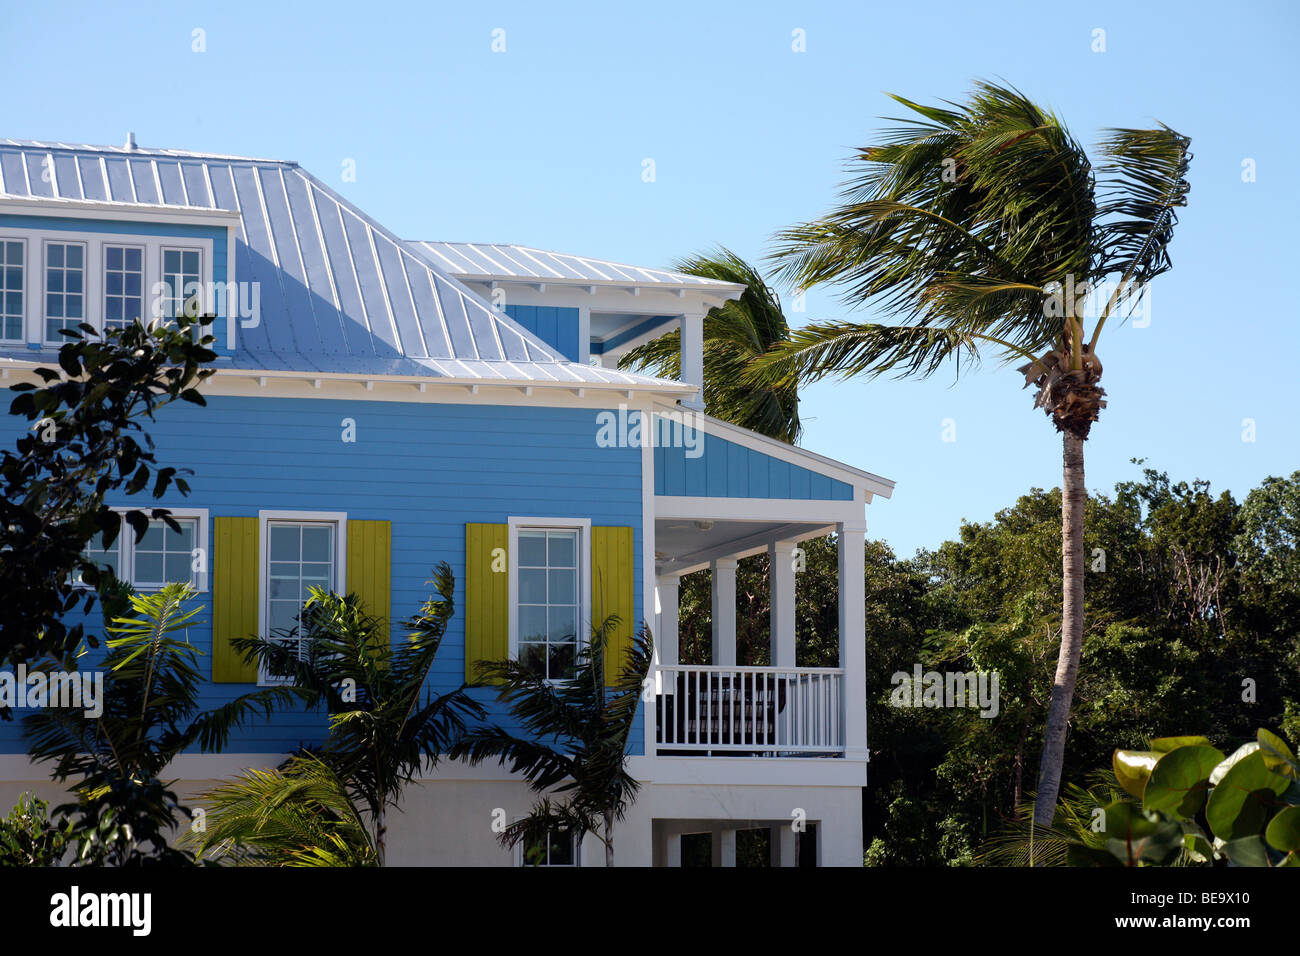 Casa Tropical de azul y blanco, con persianas de color amarillo y una veranda blanco entre palmeras contra un cielo azul Foto de stock